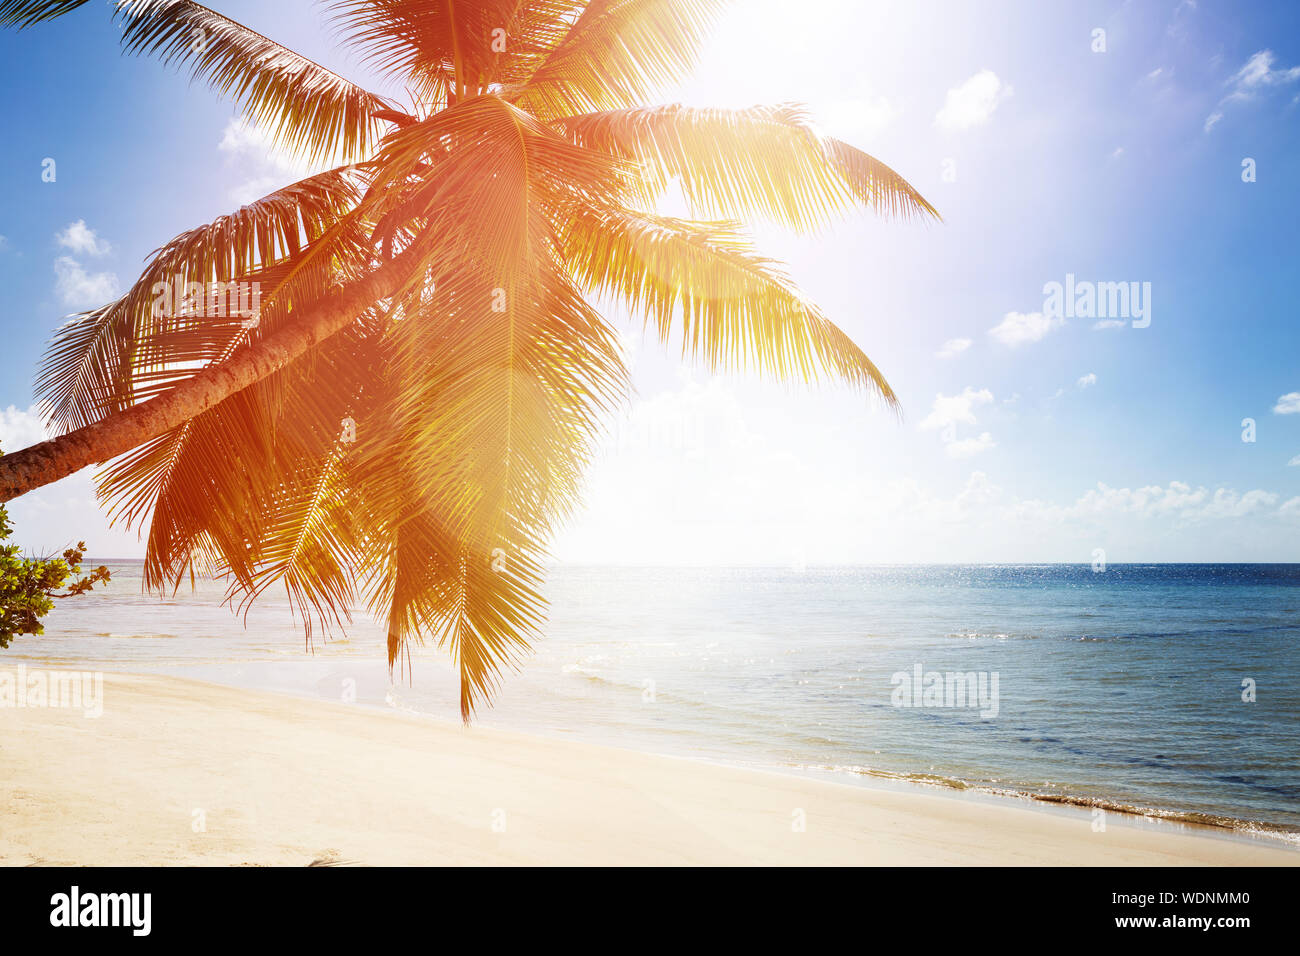 La lumière du soleil sur le palmier près de la mer idyllique Banque D'Images